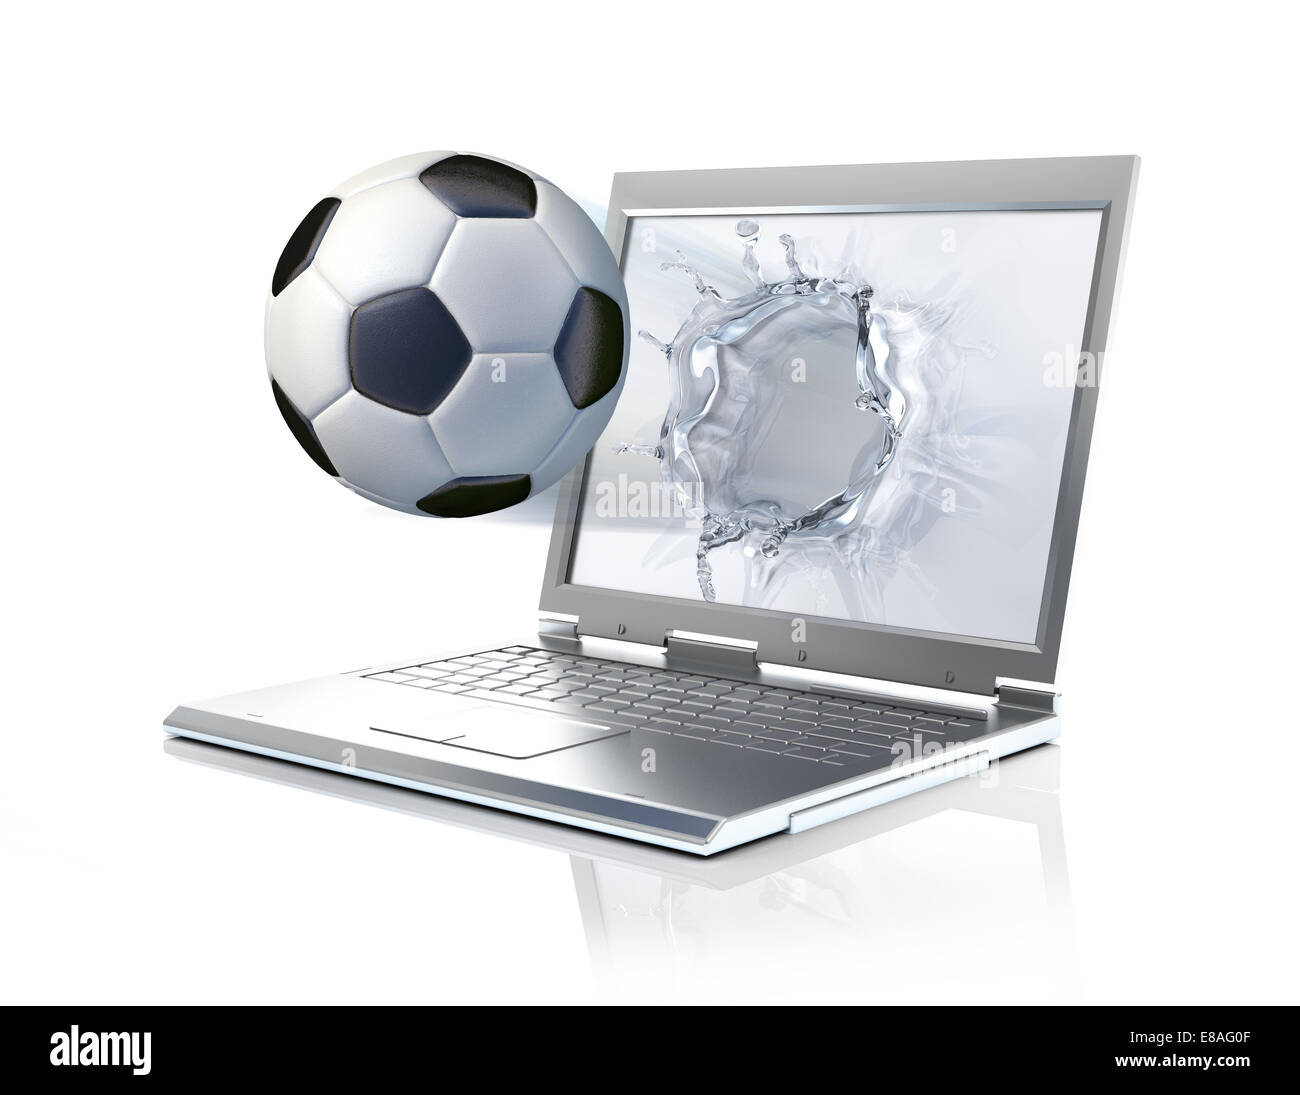 Sfera di calcio proveniente da un computer portatile, la formazione di schizzi di liquido sullo schermo. Isolato su sfondo bianco Foto Stock